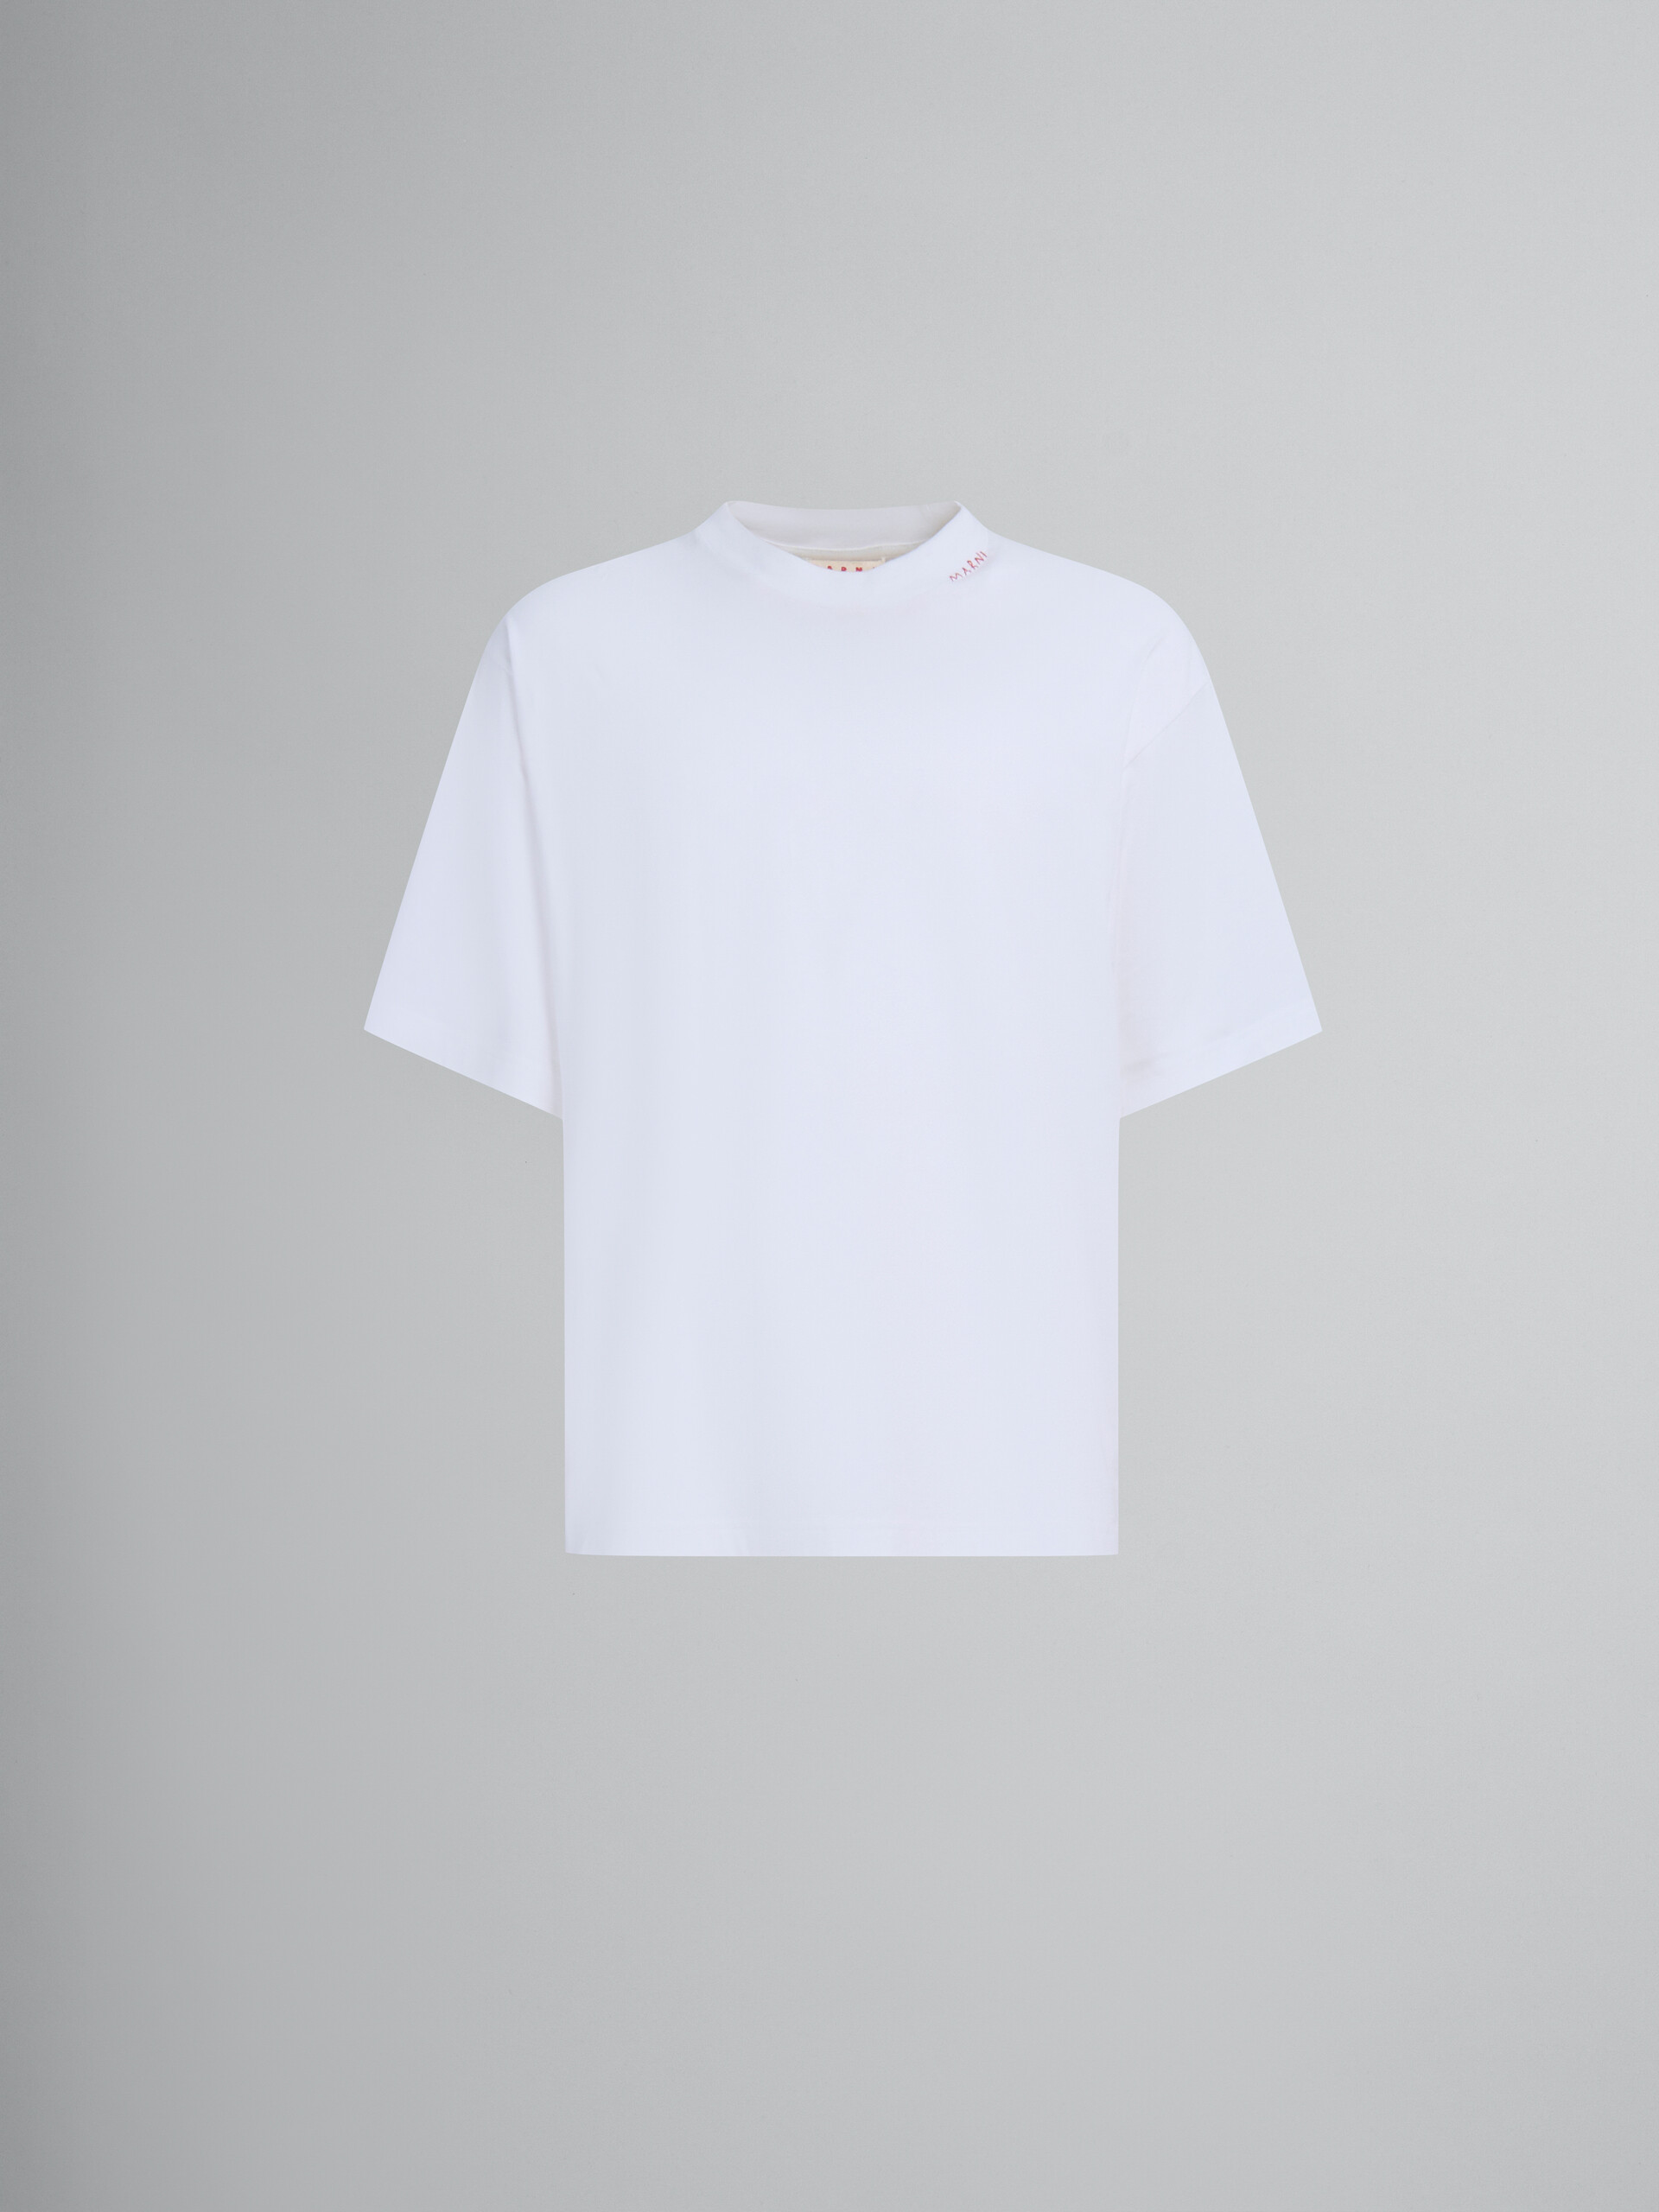 ホワイト オーガニックコットン製Tシャツ 3枚セット - Tシャツ - Image 1